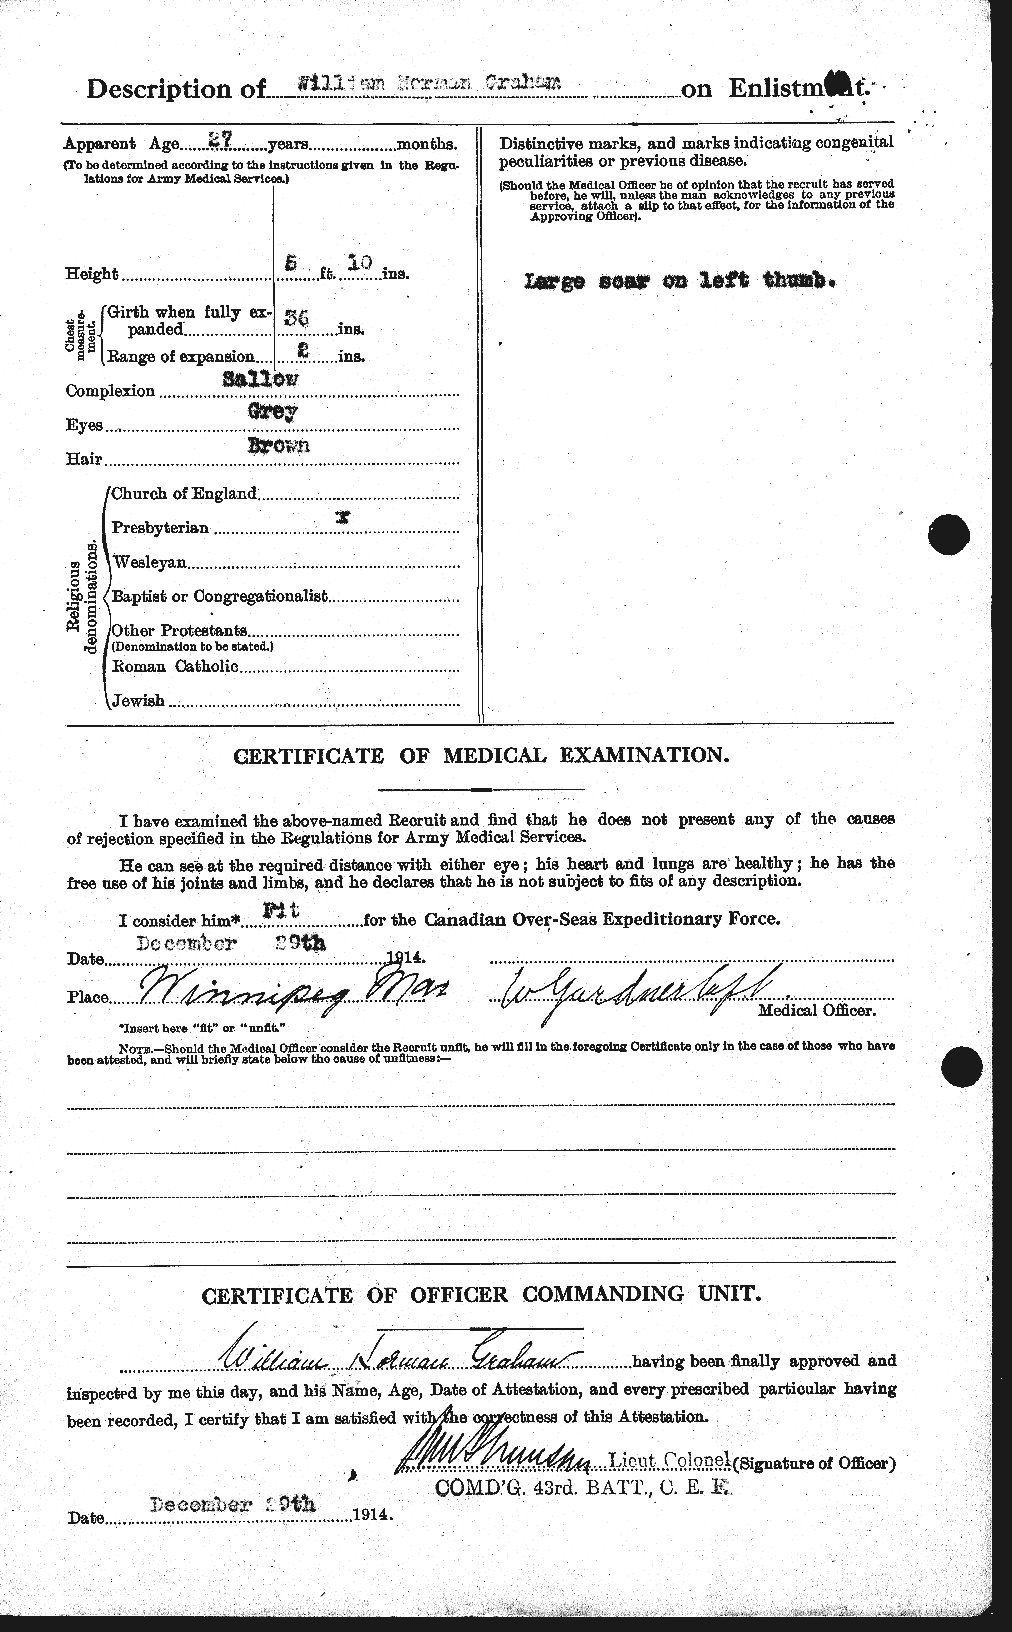 Dossiers du Personnel de la Première Guerre mondiale - CEC 358028b